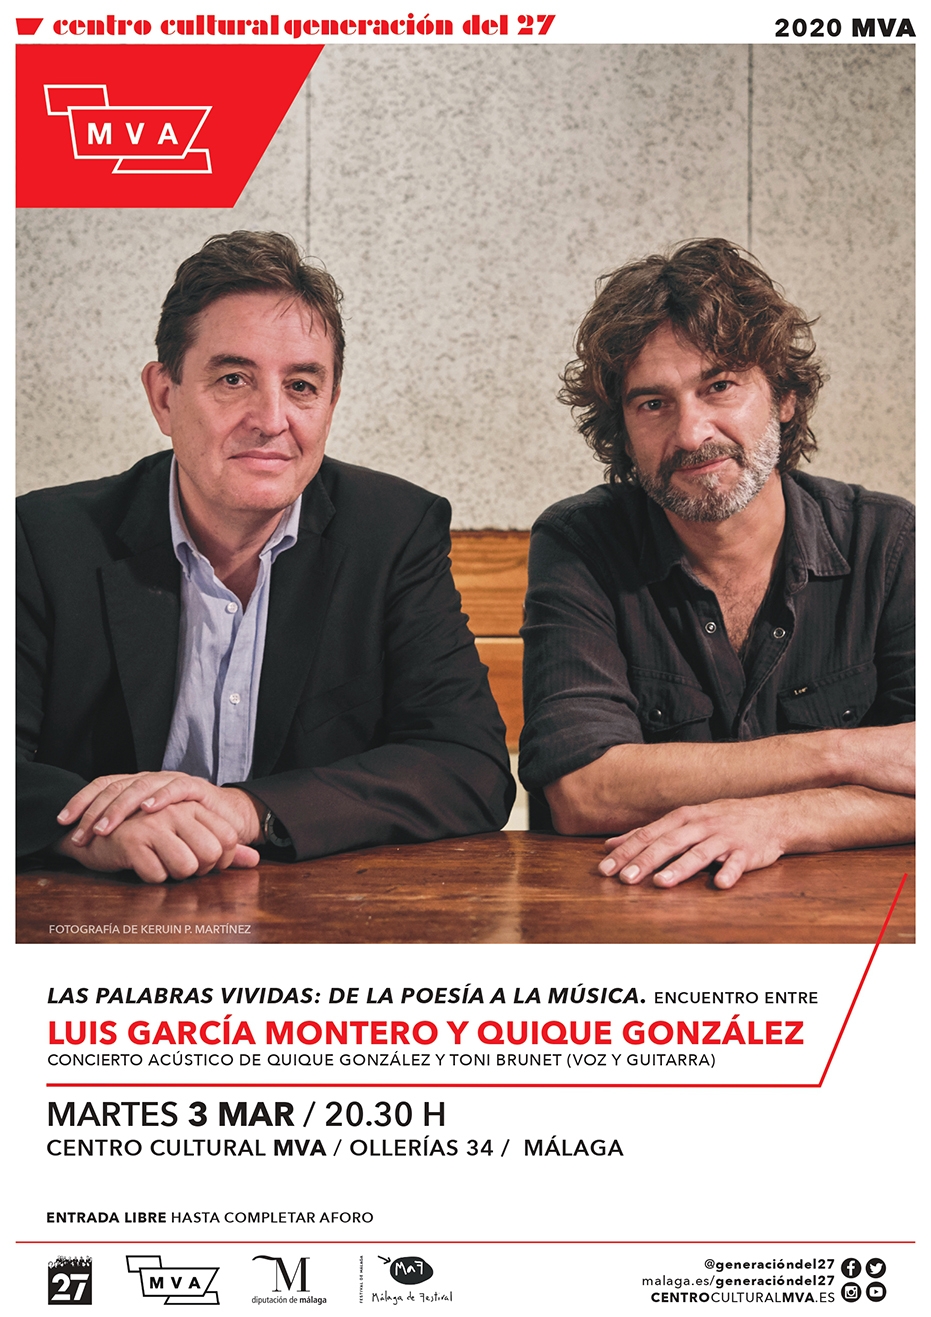 'Palabras vividas: de la poesía a la música'. Encuentro entre Luis García Montero y Quique González. Concierto acústico de Quique González